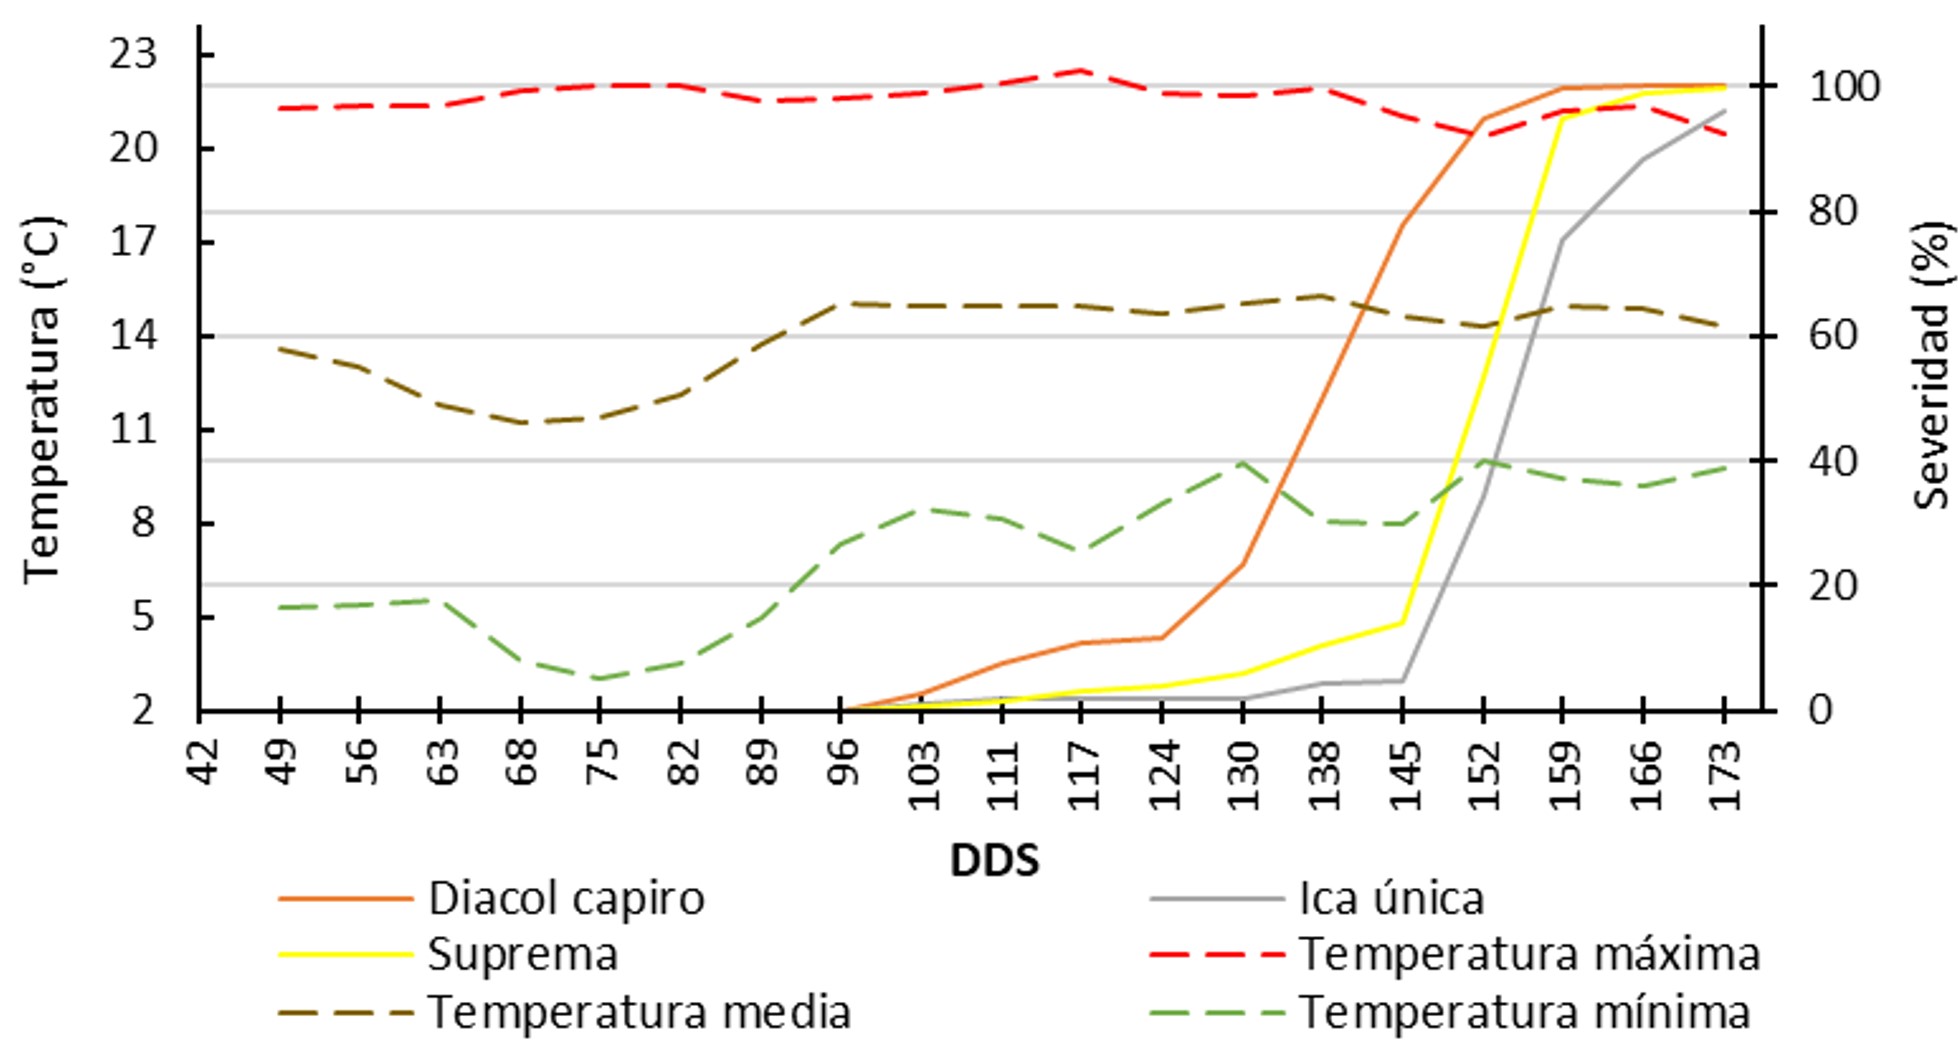 Relación de la severidad del tizón tardío (P. infestans) y los grados día en tres variedades de papa durante los meses de diciembre 2015 a mayo 2016 en un ciclo de cultivo (173 días después de siembra - dds).